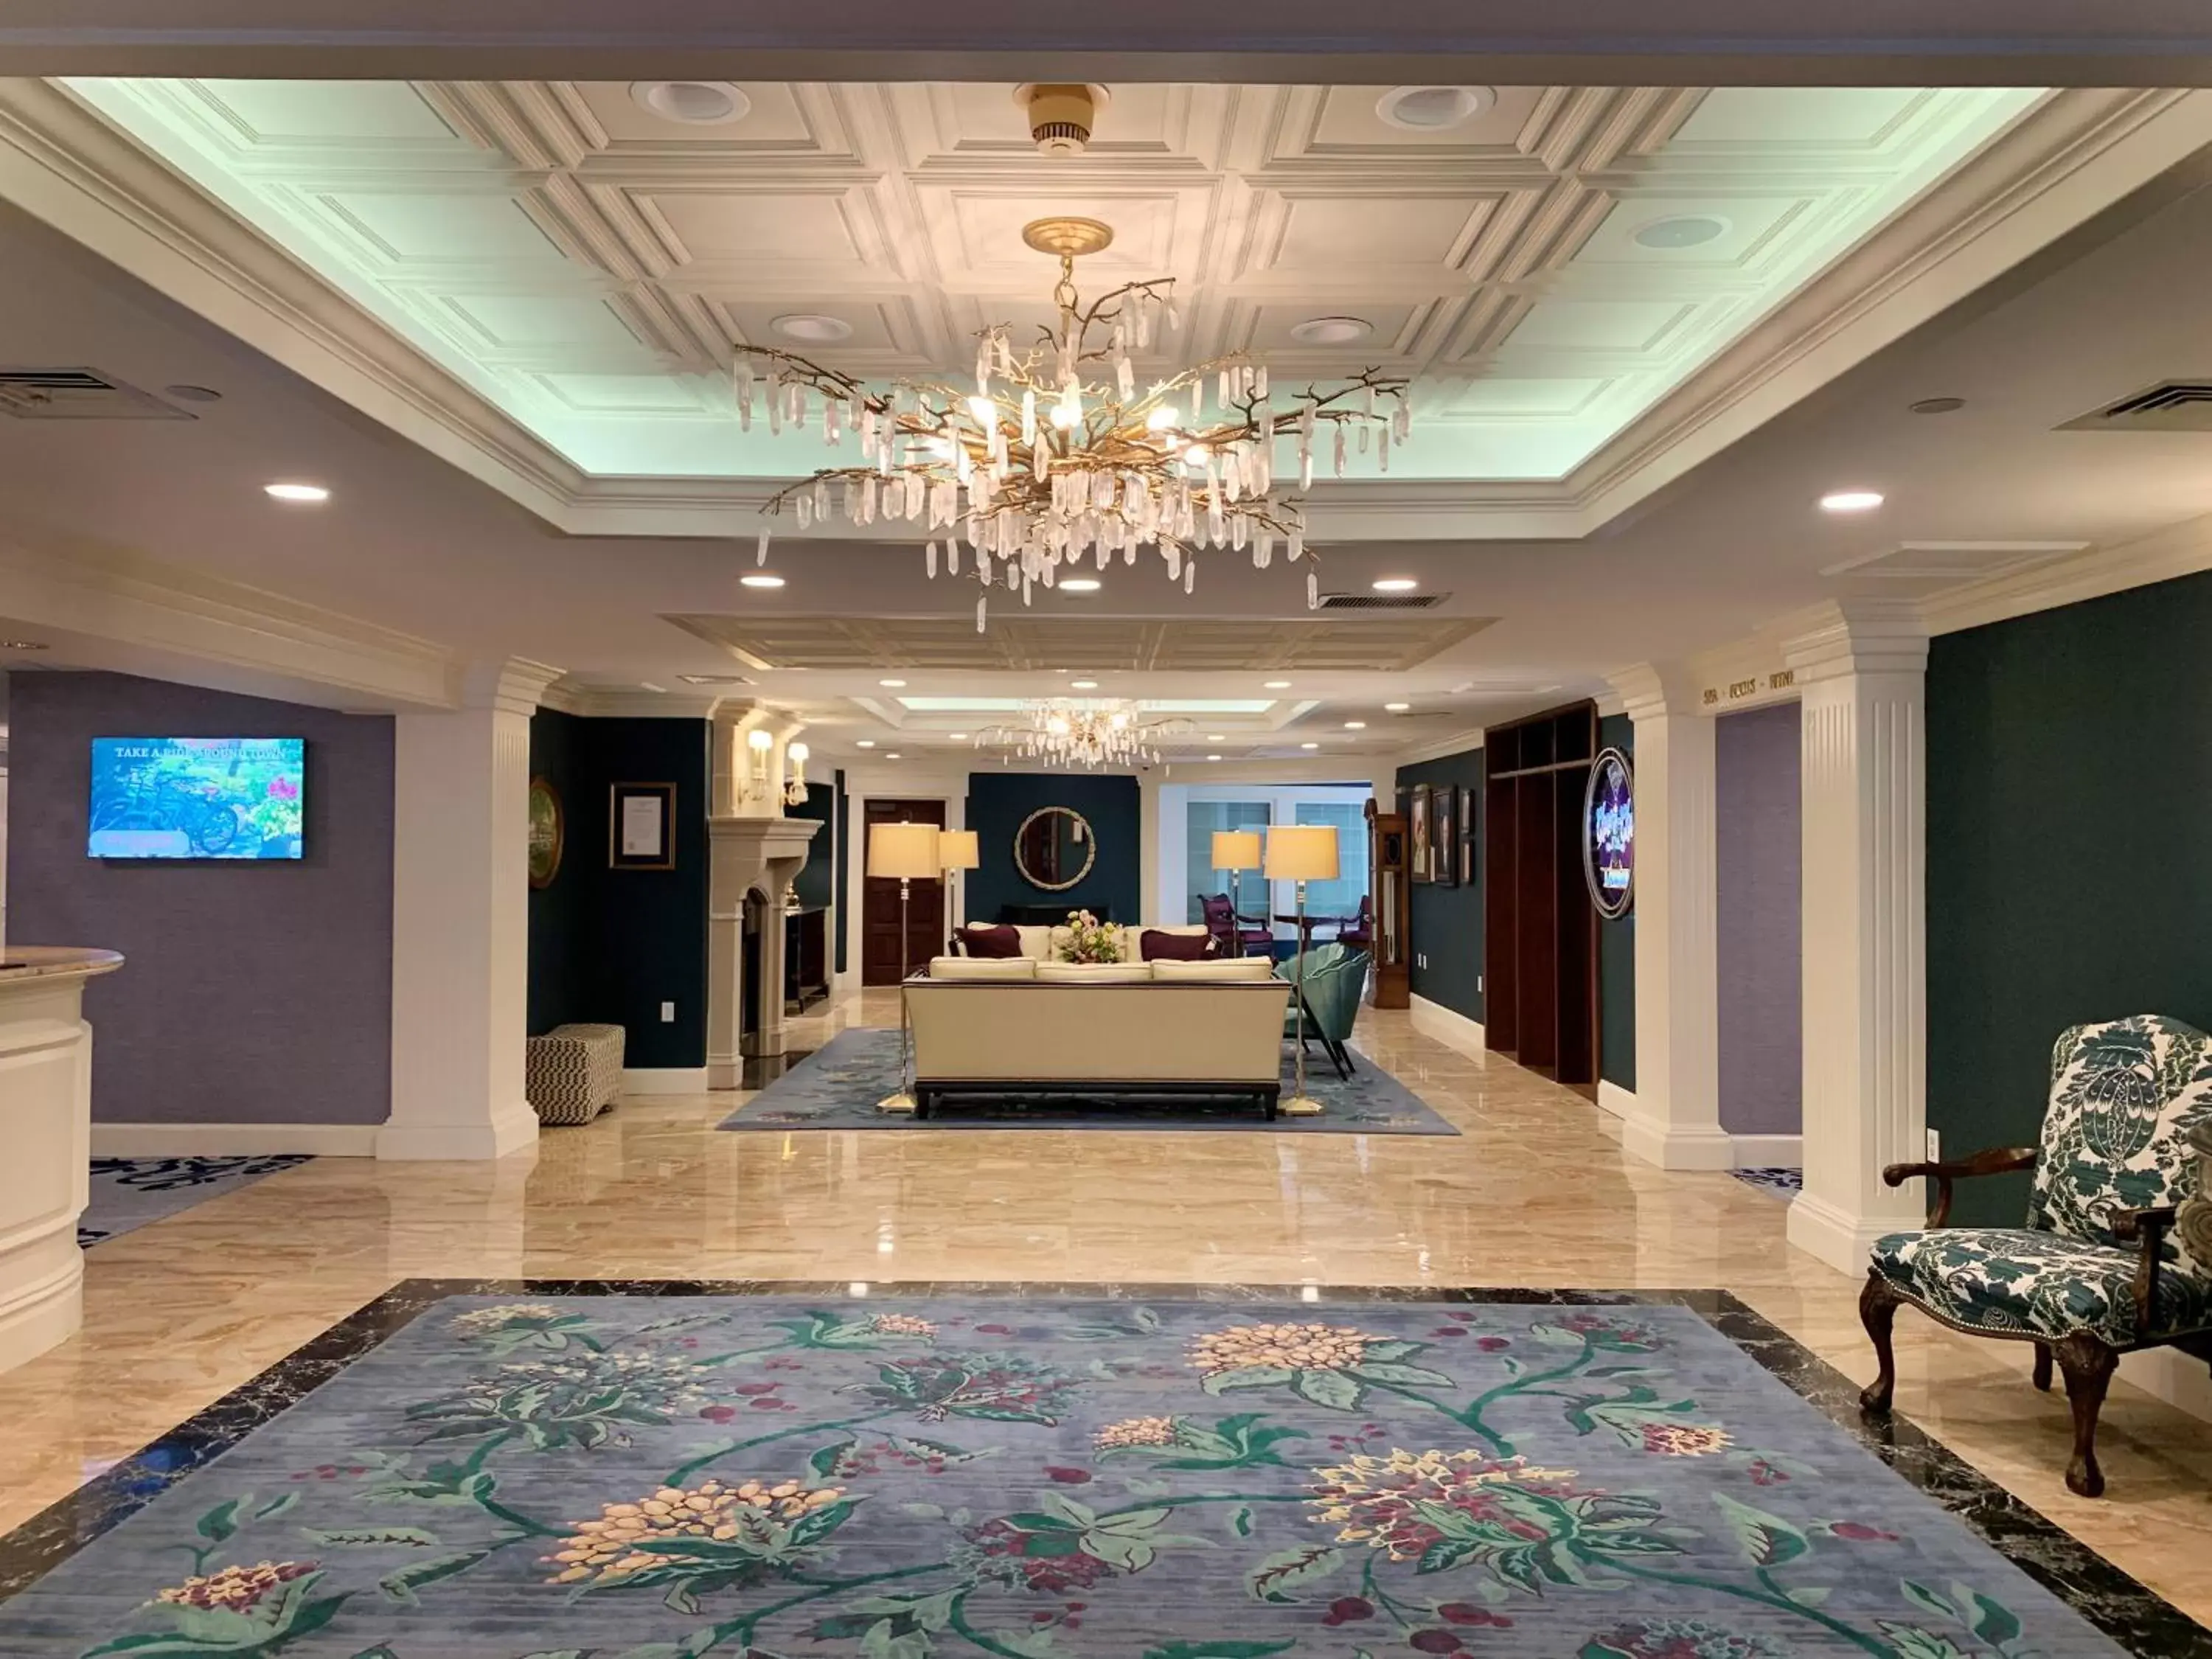 Lobby or reception, Lobby/Reception in Saybrook Point Resort & Marina